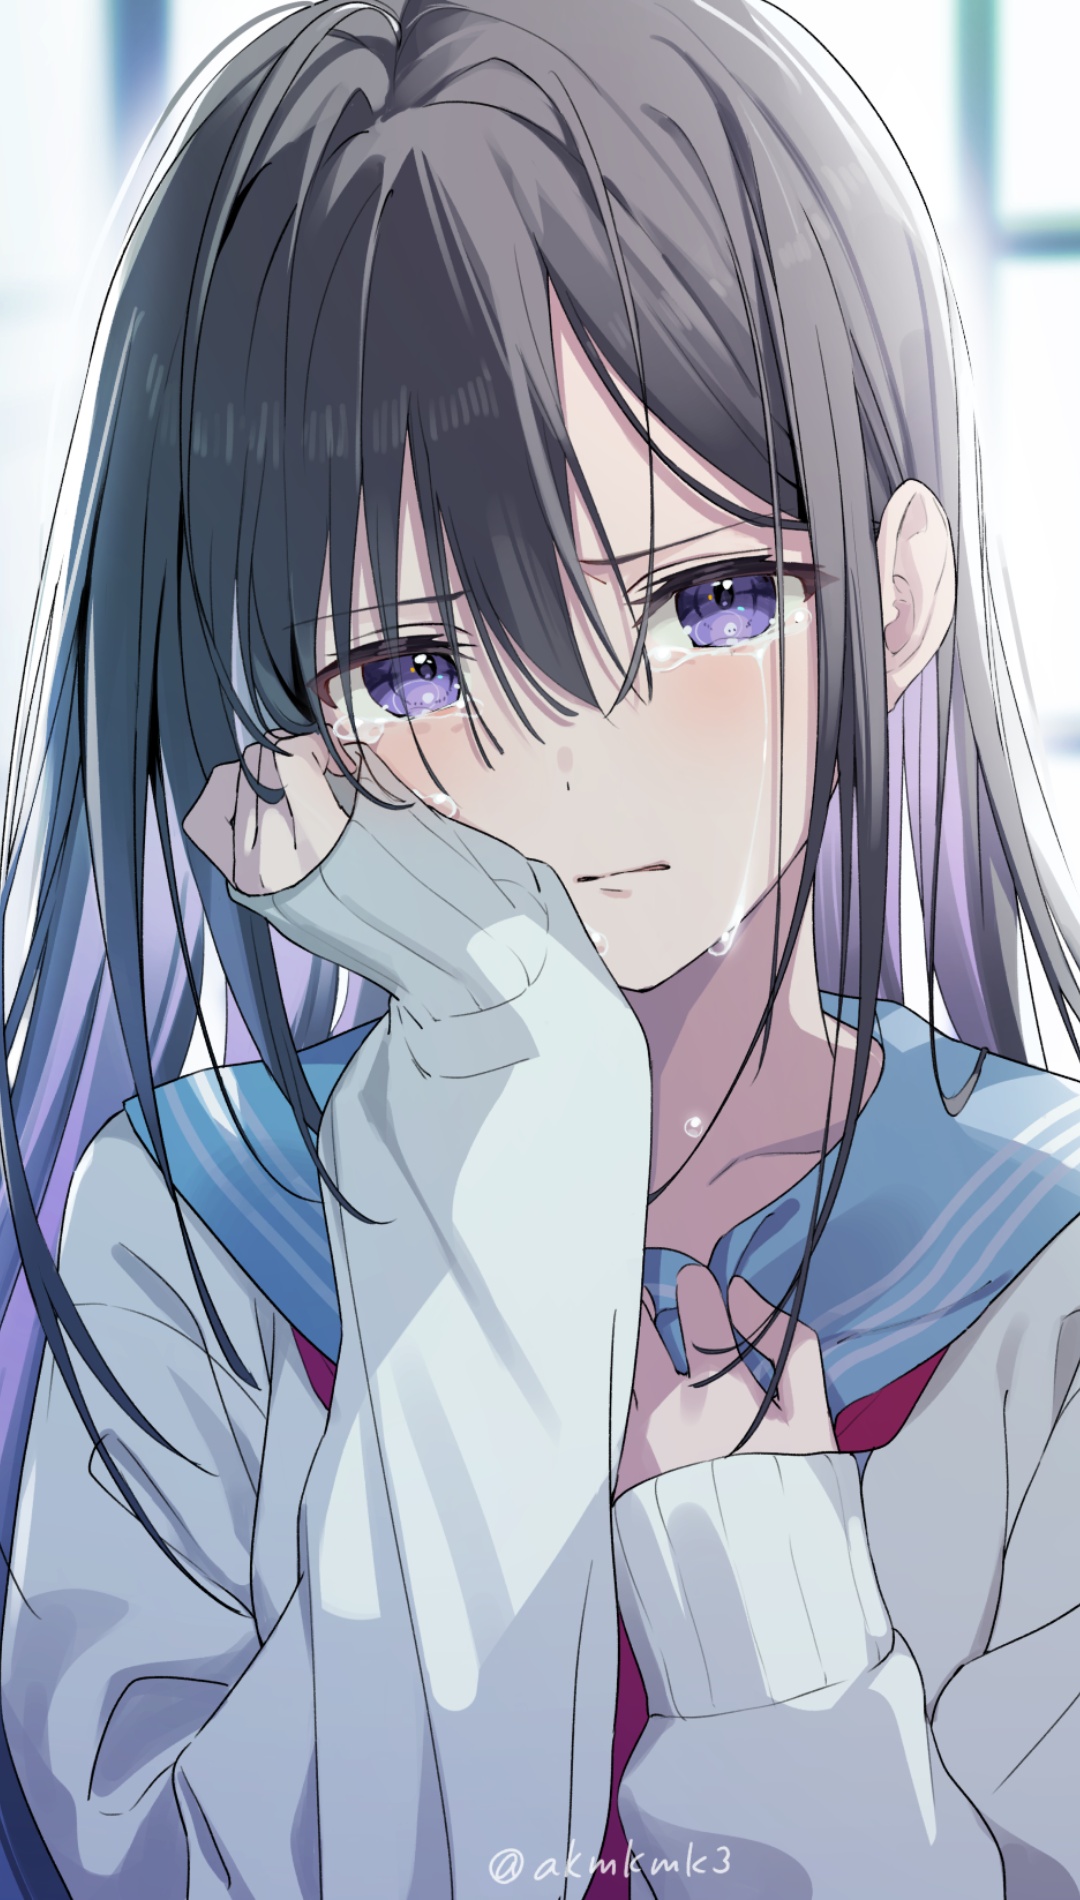 Sad Crying Anime Girl Phone Wallpaper